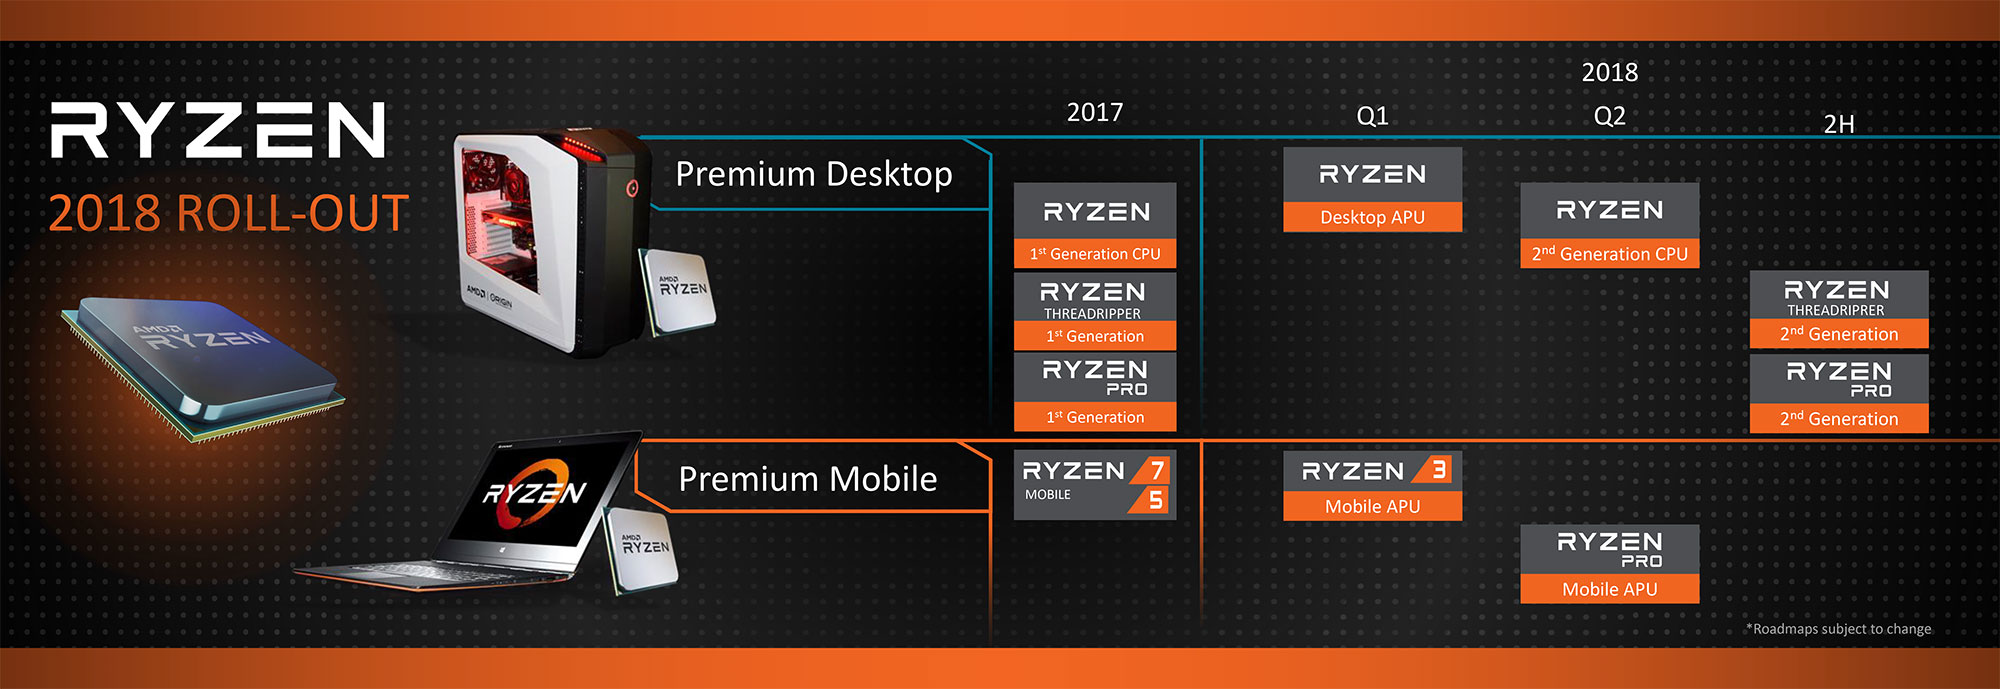 Roadmap 2018 AMD